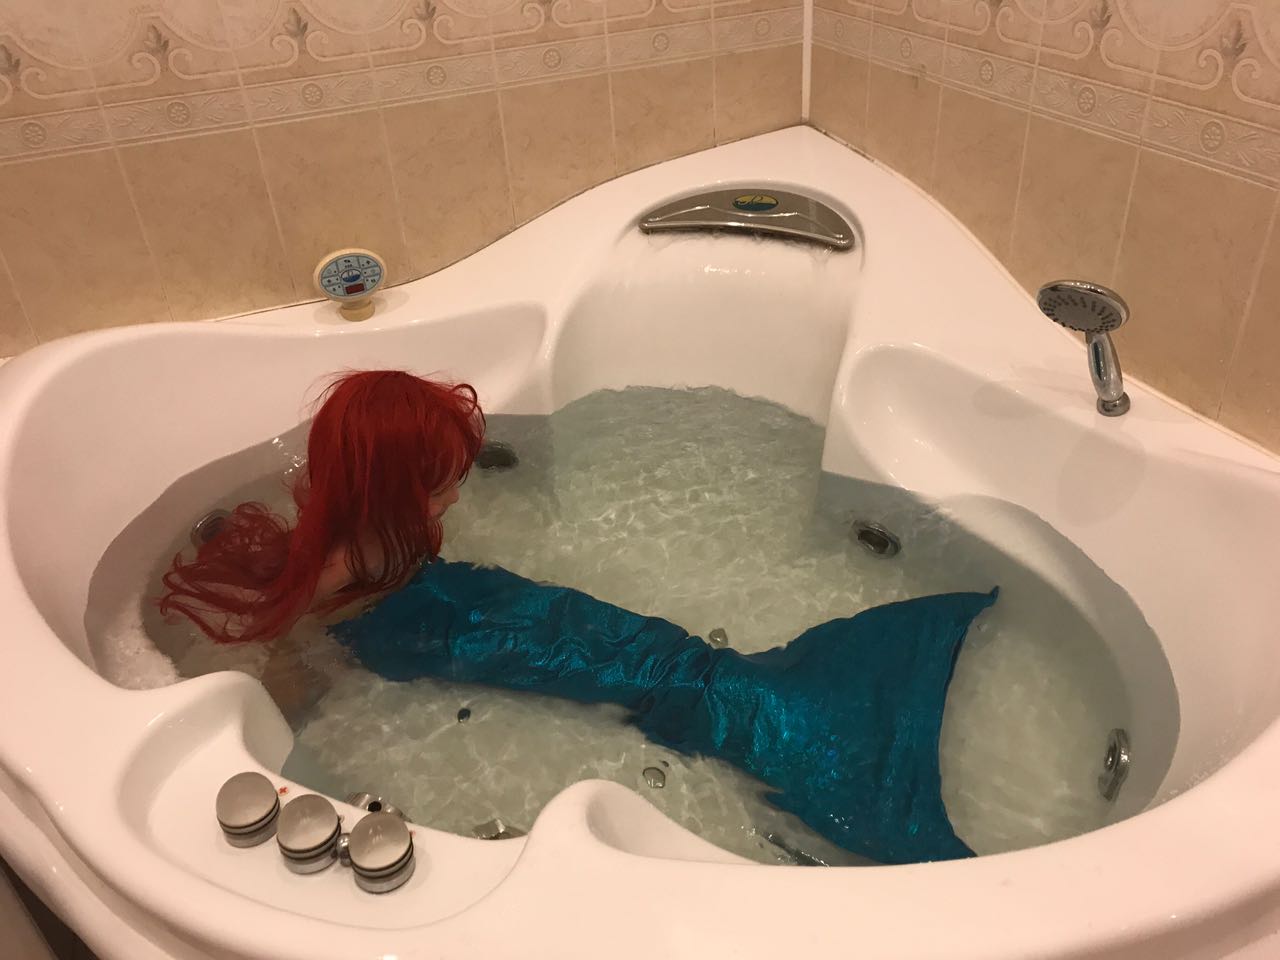 Купальник русалки в ванне